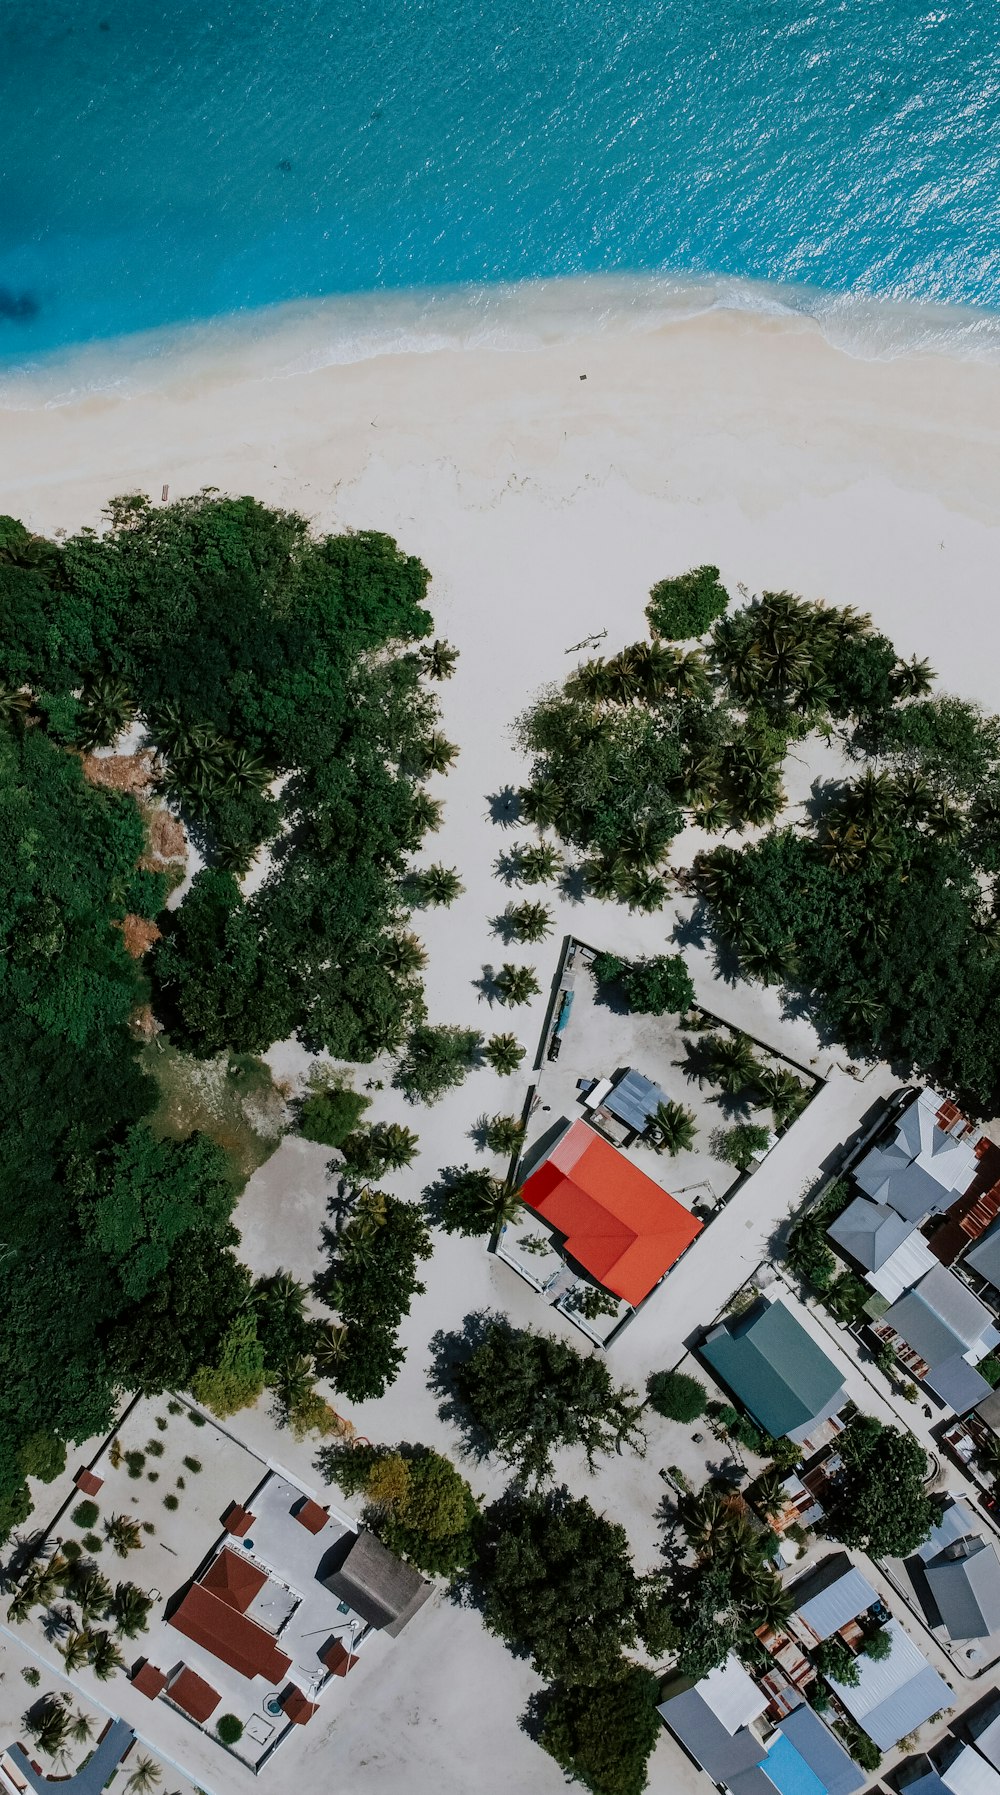 Vista aérea de uma praia com casas e árvores